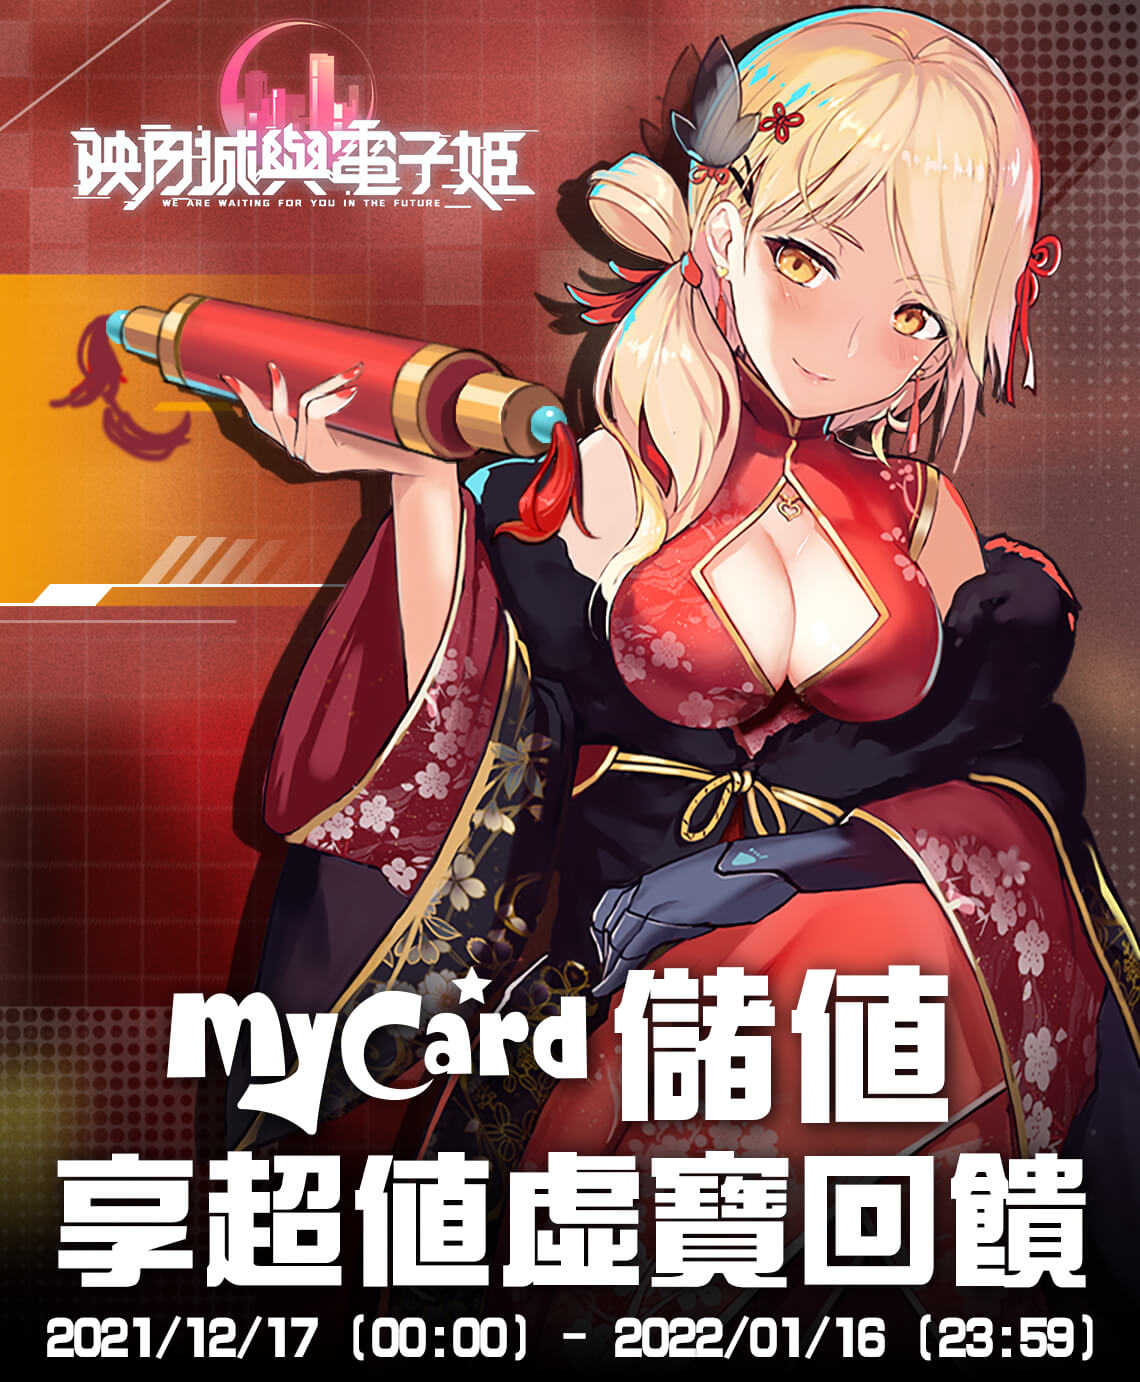   《映月城與電子姬》MyCard儲值享超值虛寶回饋 | 中華電信